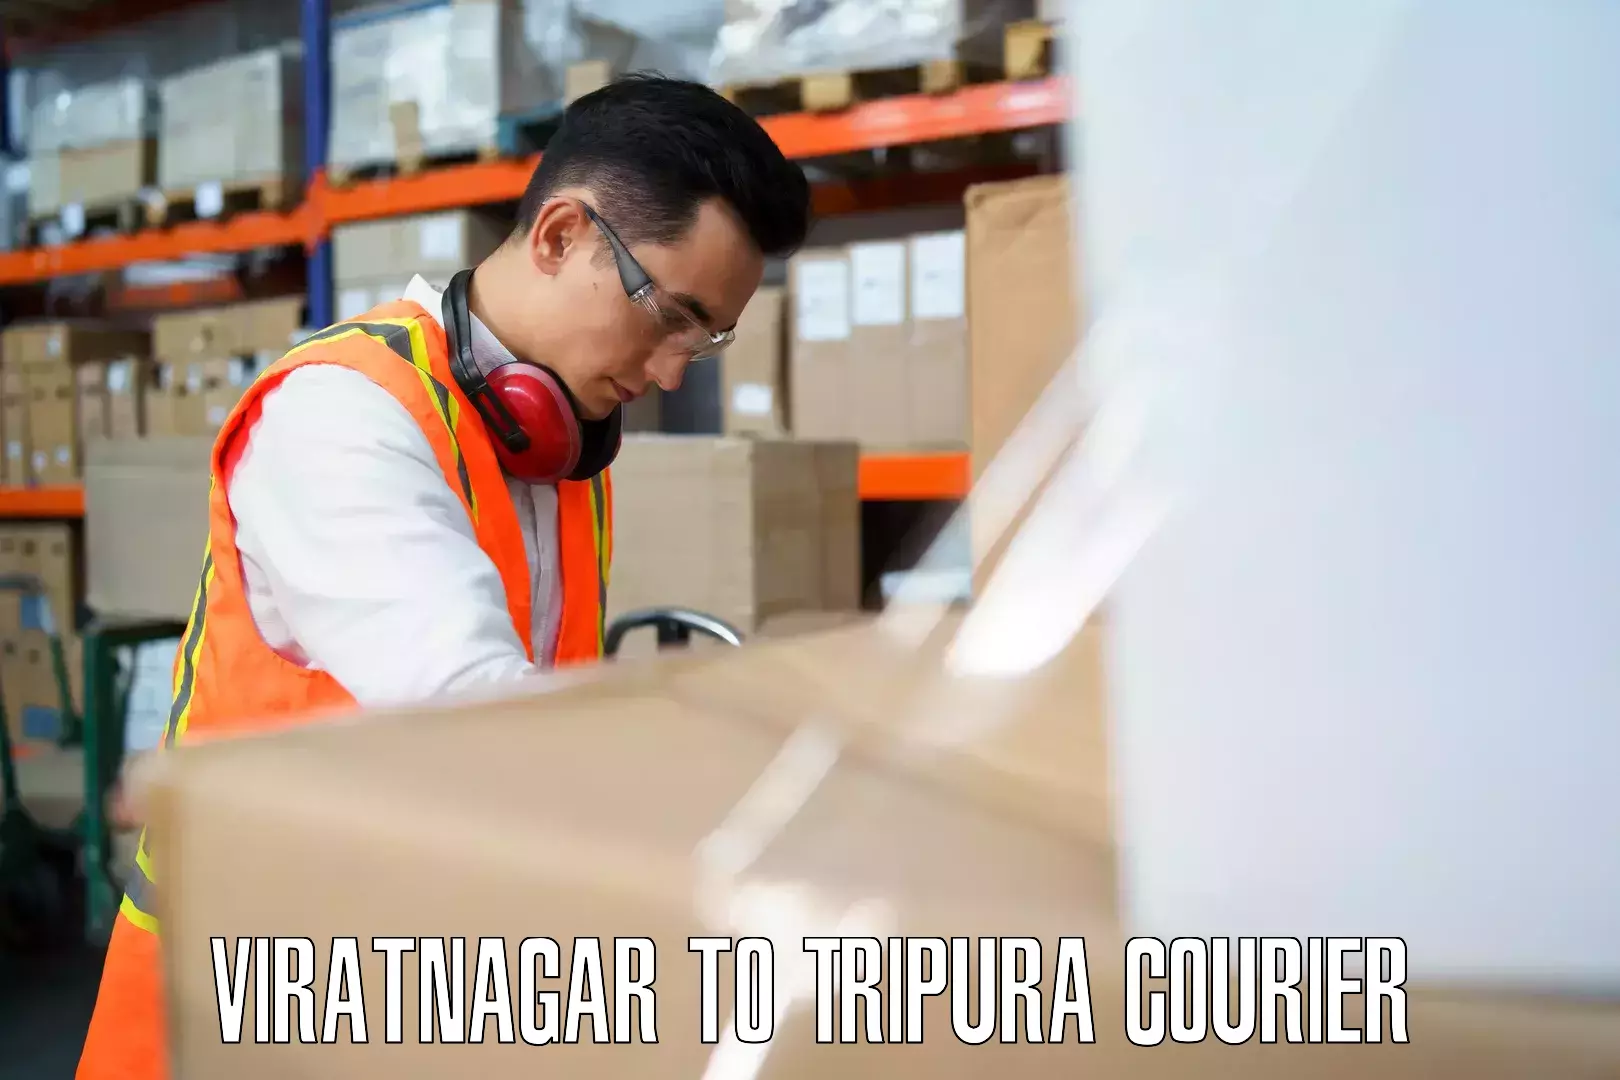 Baggage transport cost in Viratnagar to Radhakishorepur